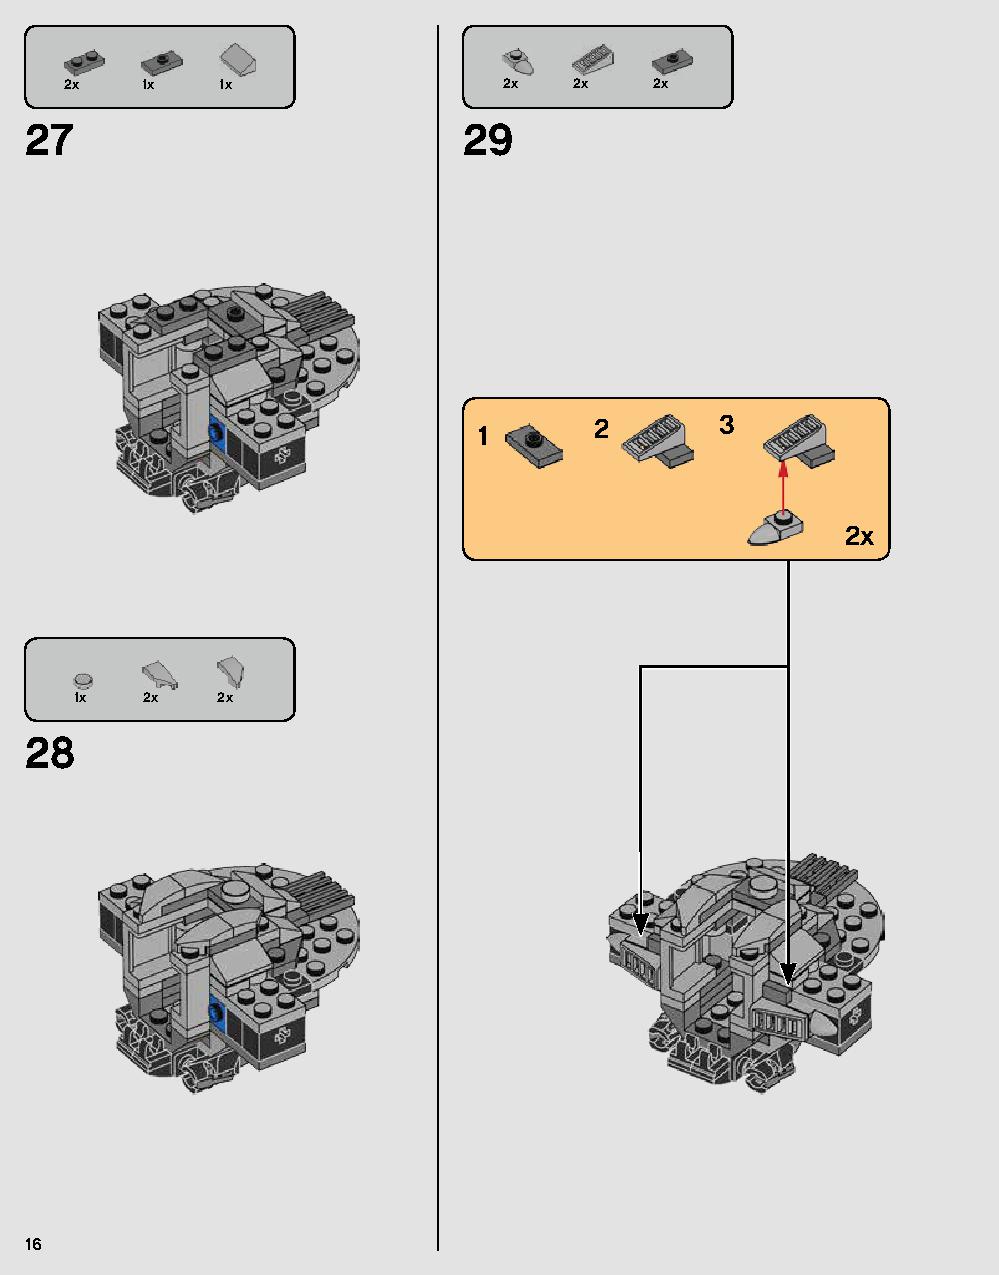 ダース・ベイダーの城 75251 レゴの商品情報 レゴの説明書・組立方法 16 page